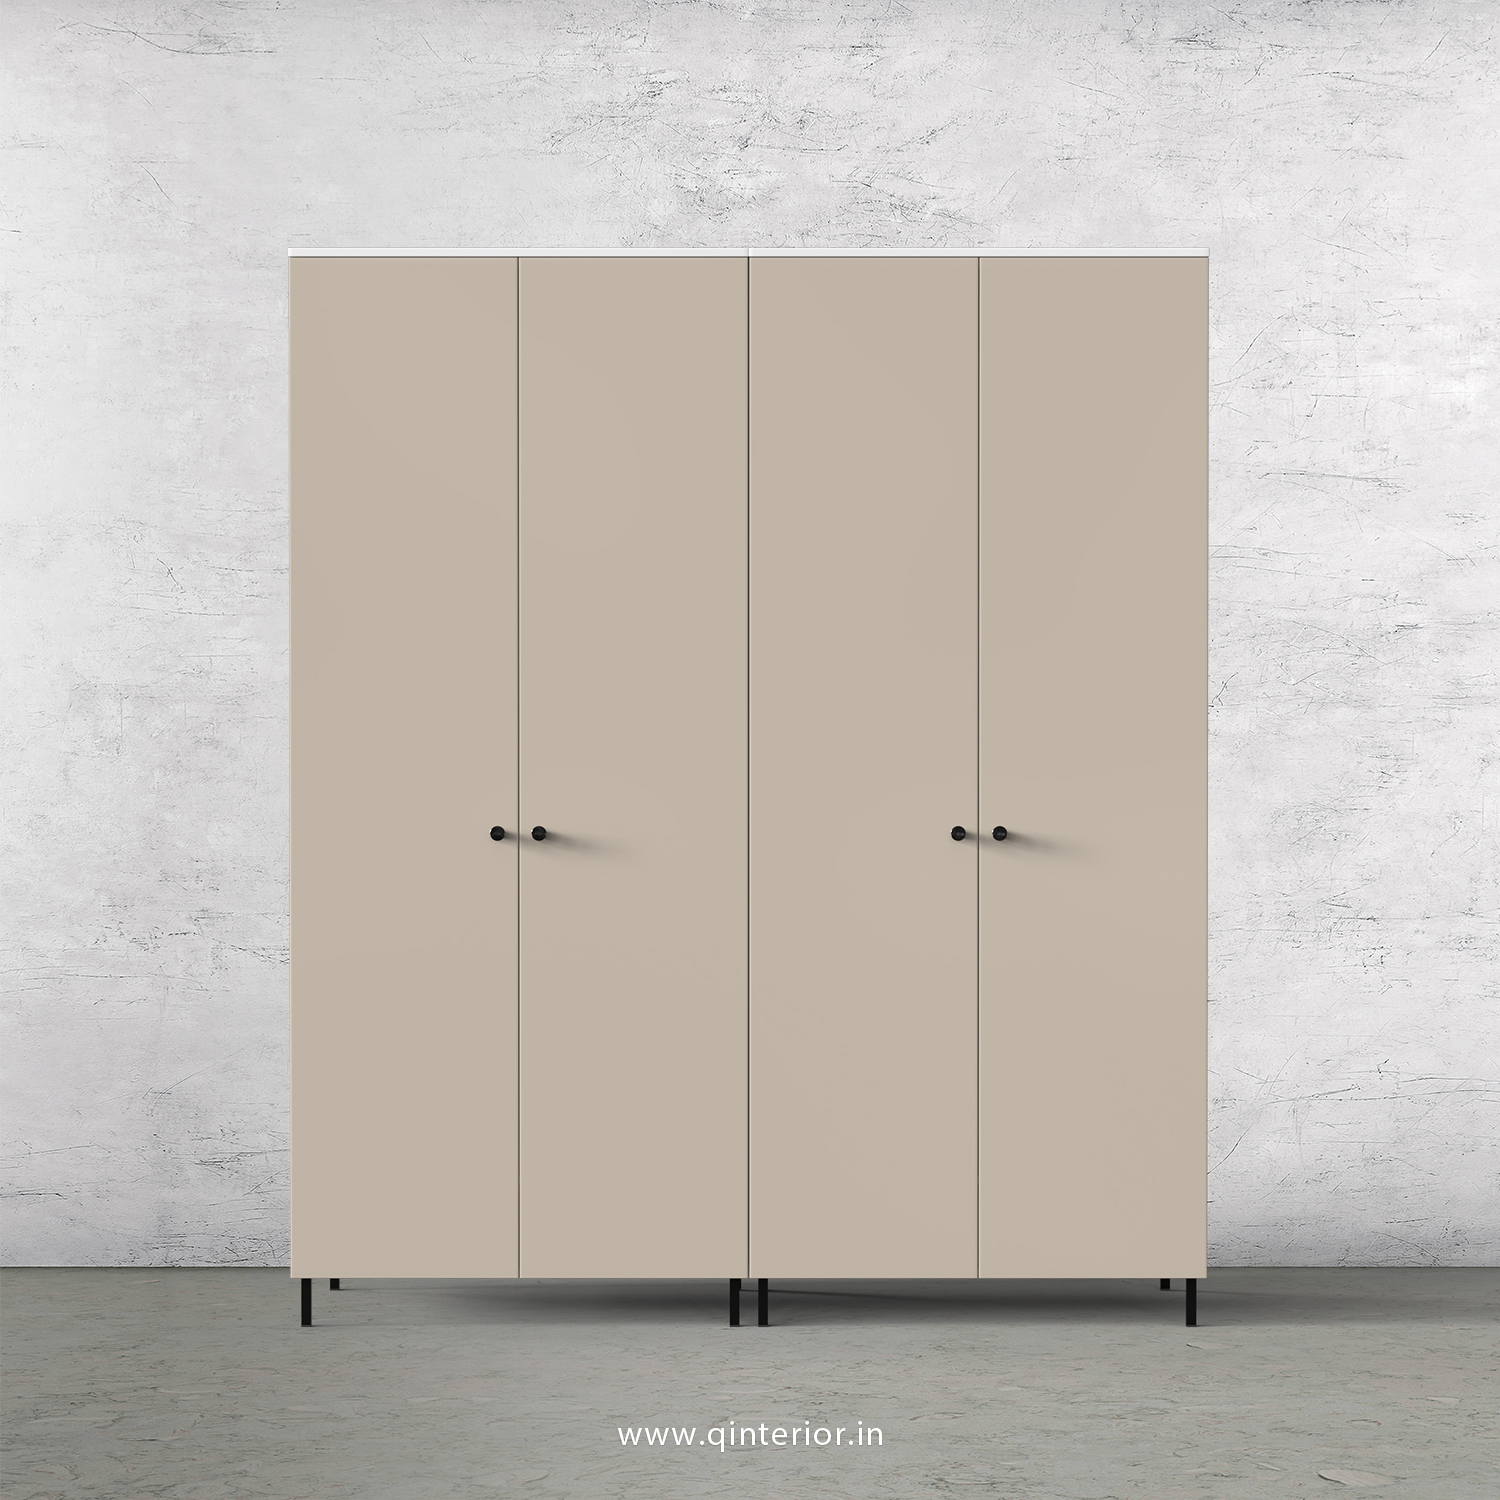 Lambent 4 Door Wardrobe in White and Irish Cream Finish – FWRD001 C88